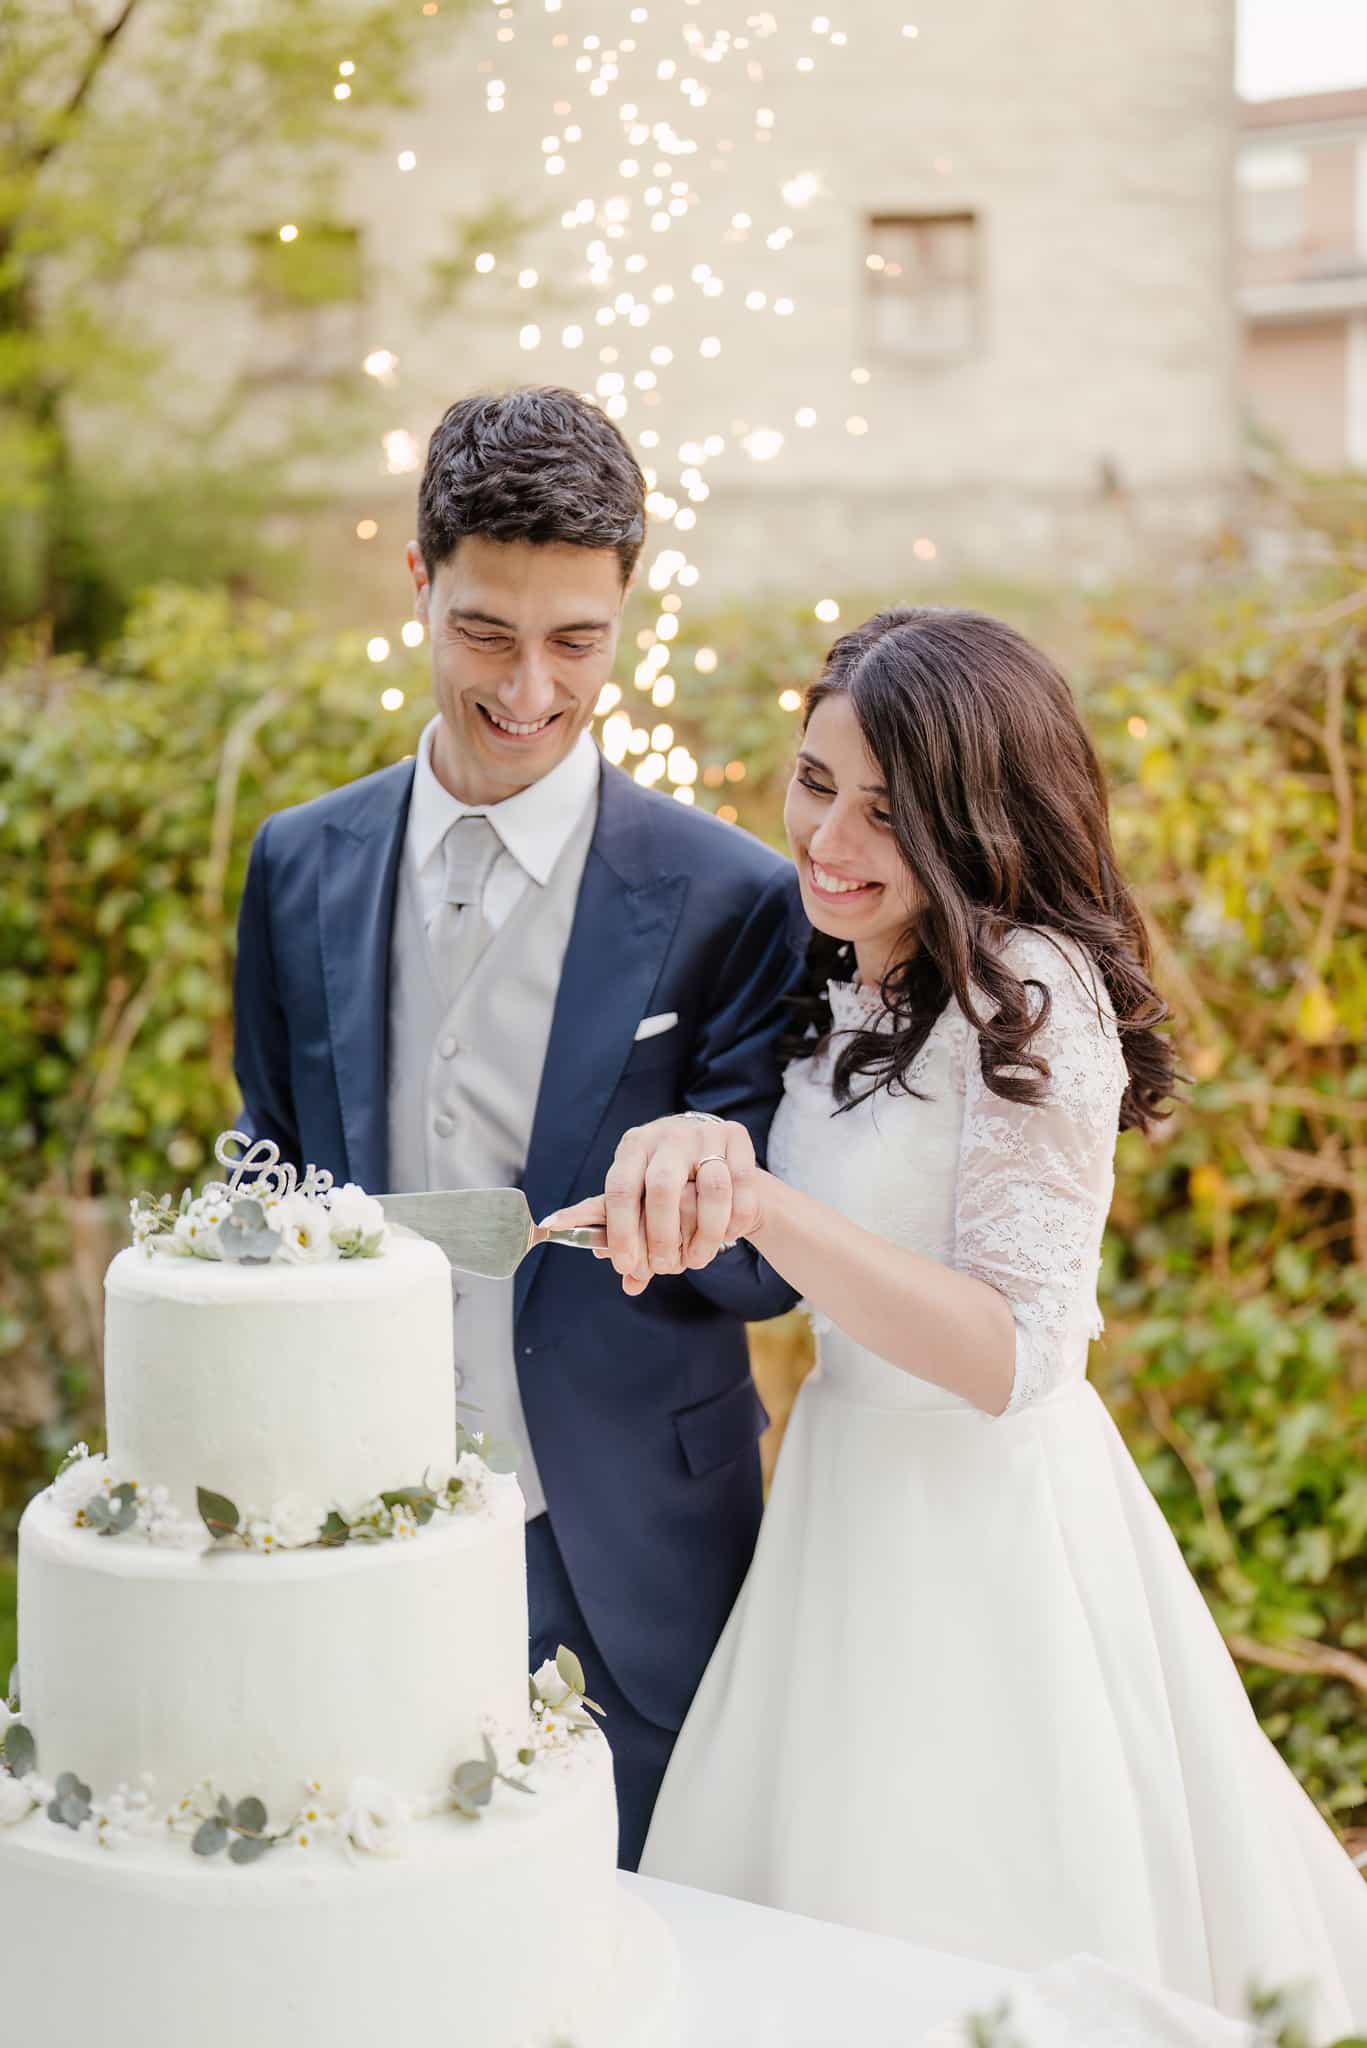 fotografo-matrimonio-sposi-villa-location-taglio-torta-nuziale-sparkles-brindisi-sposa-wedding-cake-topper